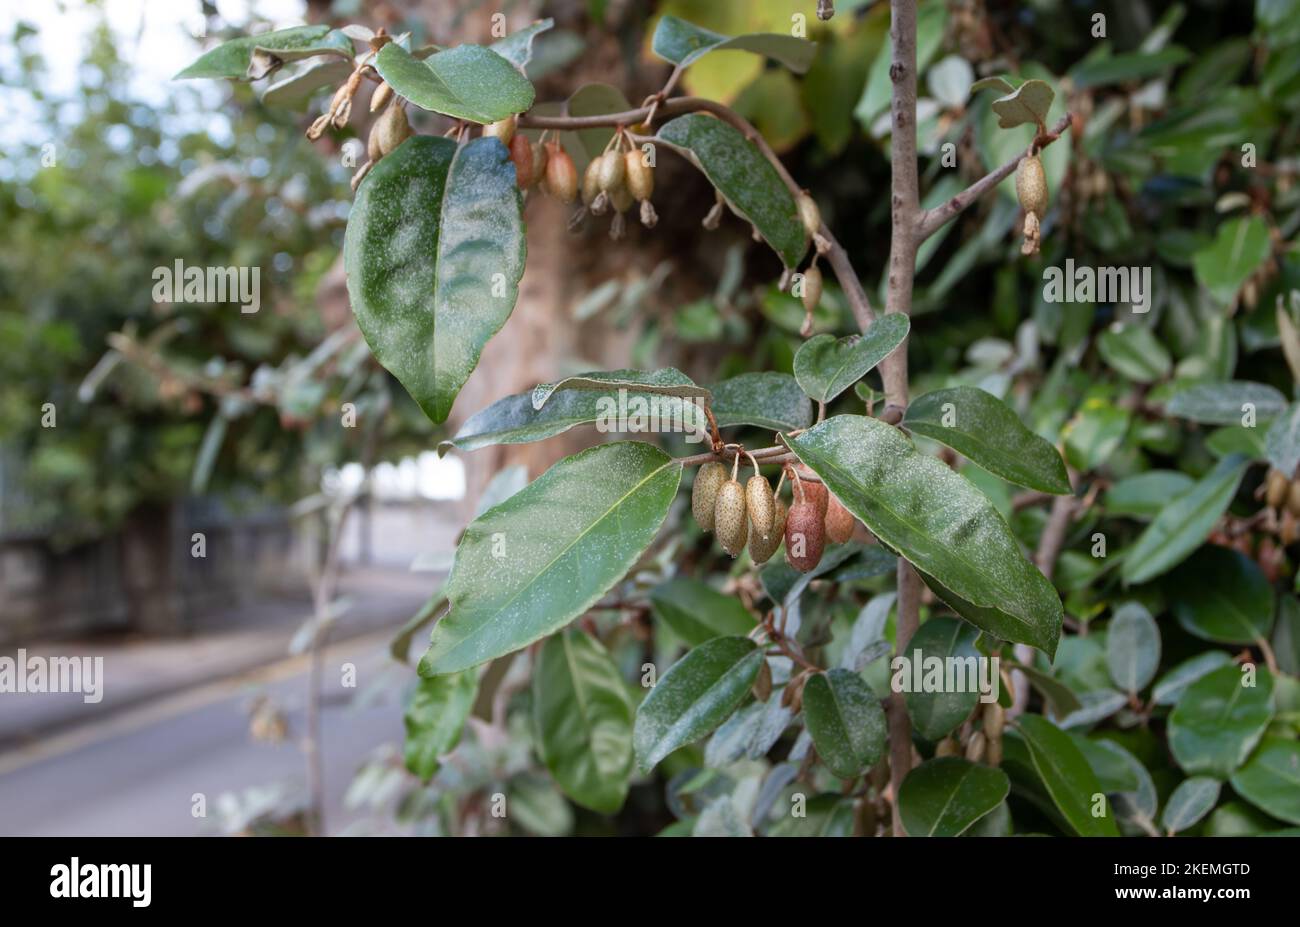 Elaeagnus ebbingei oder Silberbeere oder Oleaster Pflanzen Zweige mit Früchten und silbernen Blättern Stockfoto